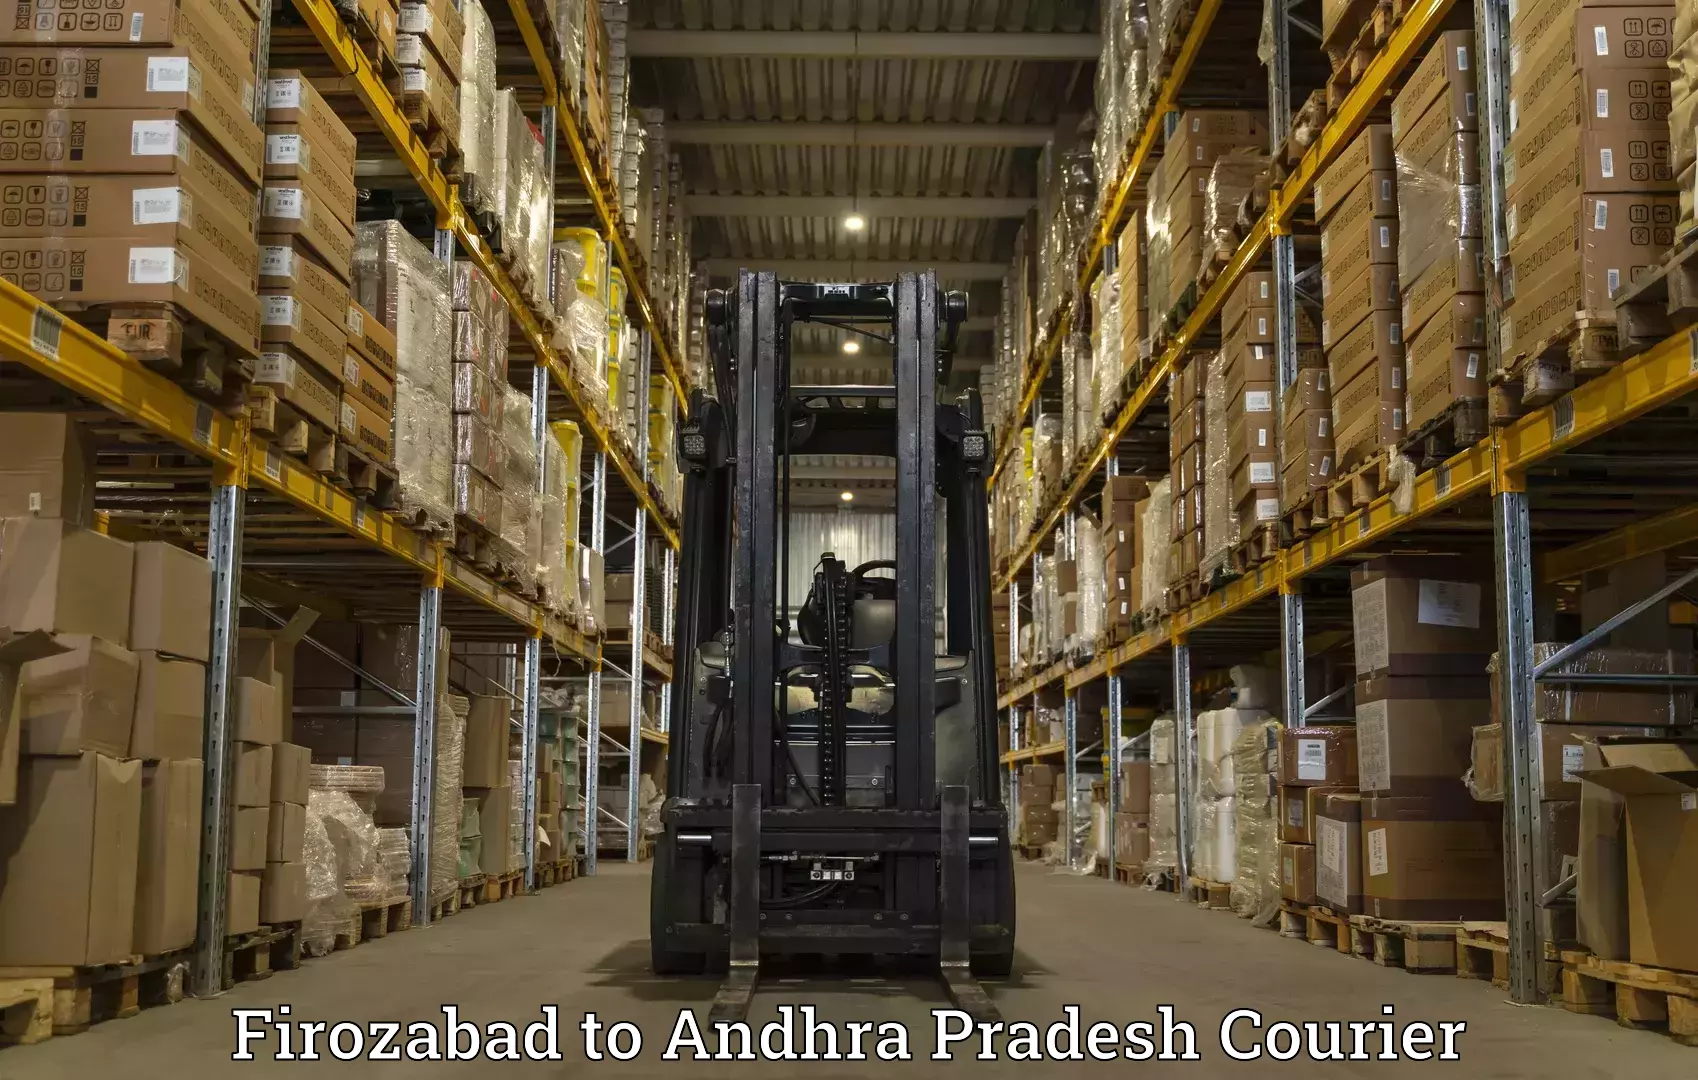 Customer-focused courier Firozabad to Kovvur